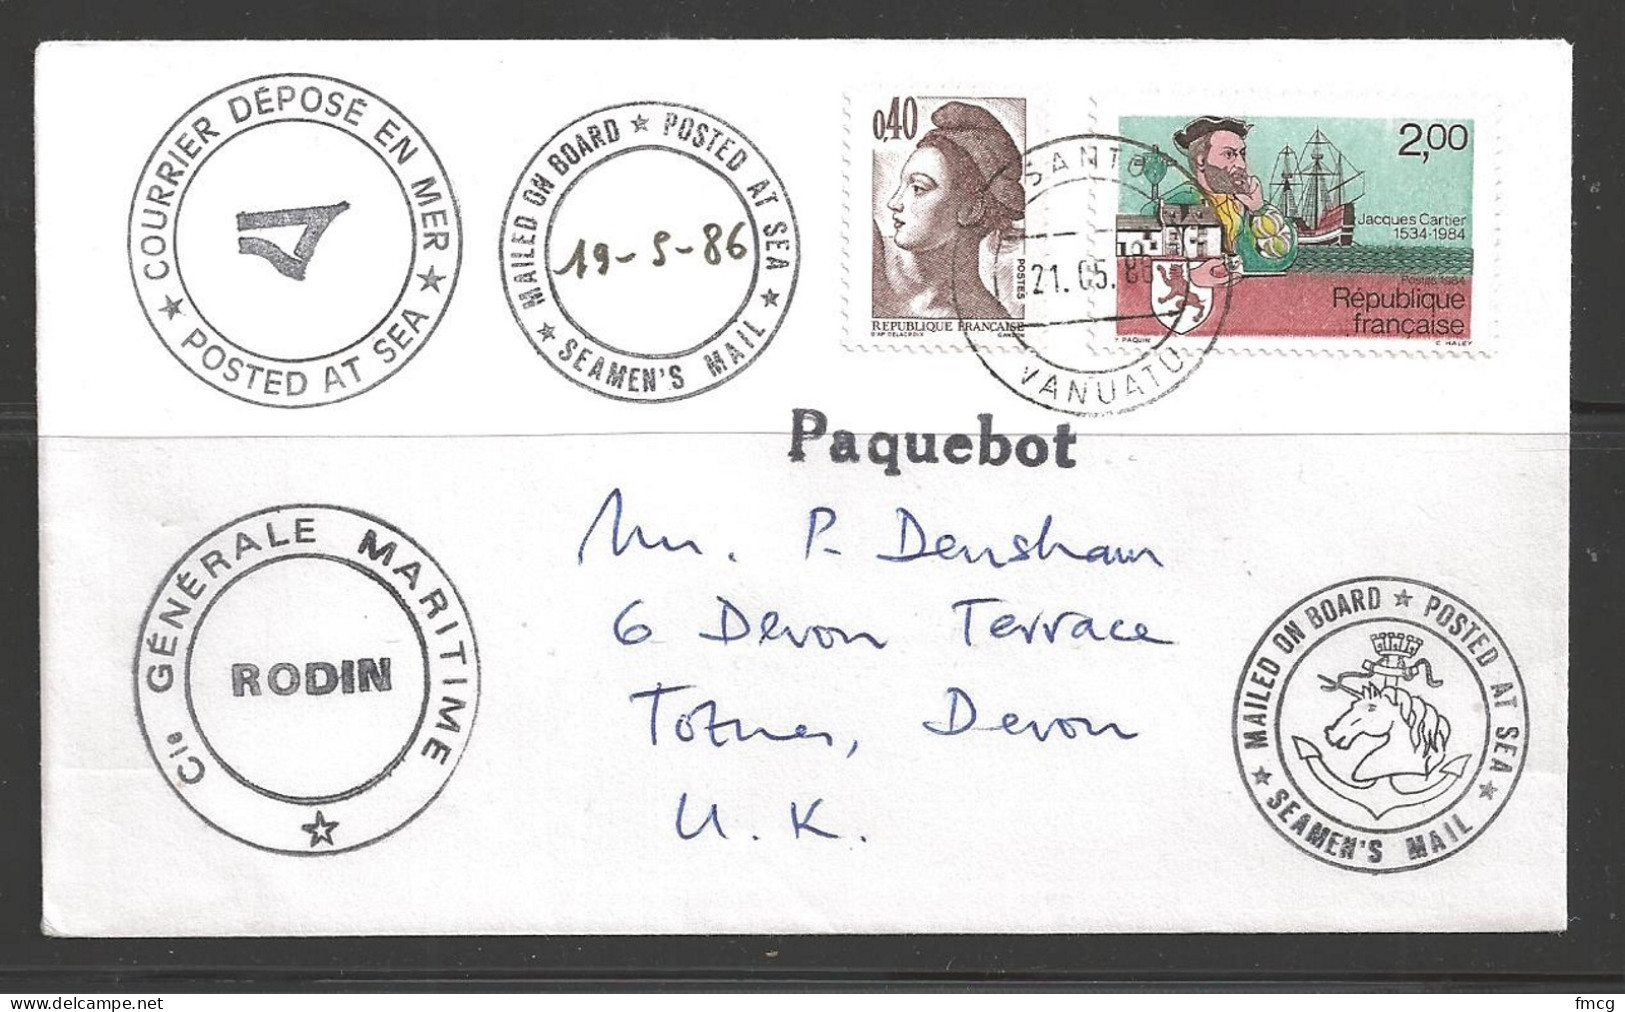 1986 Paquebot Cover France Stamps Used In Santos, Vanuatu (21.05.86) - Vanuatu (1980-...)